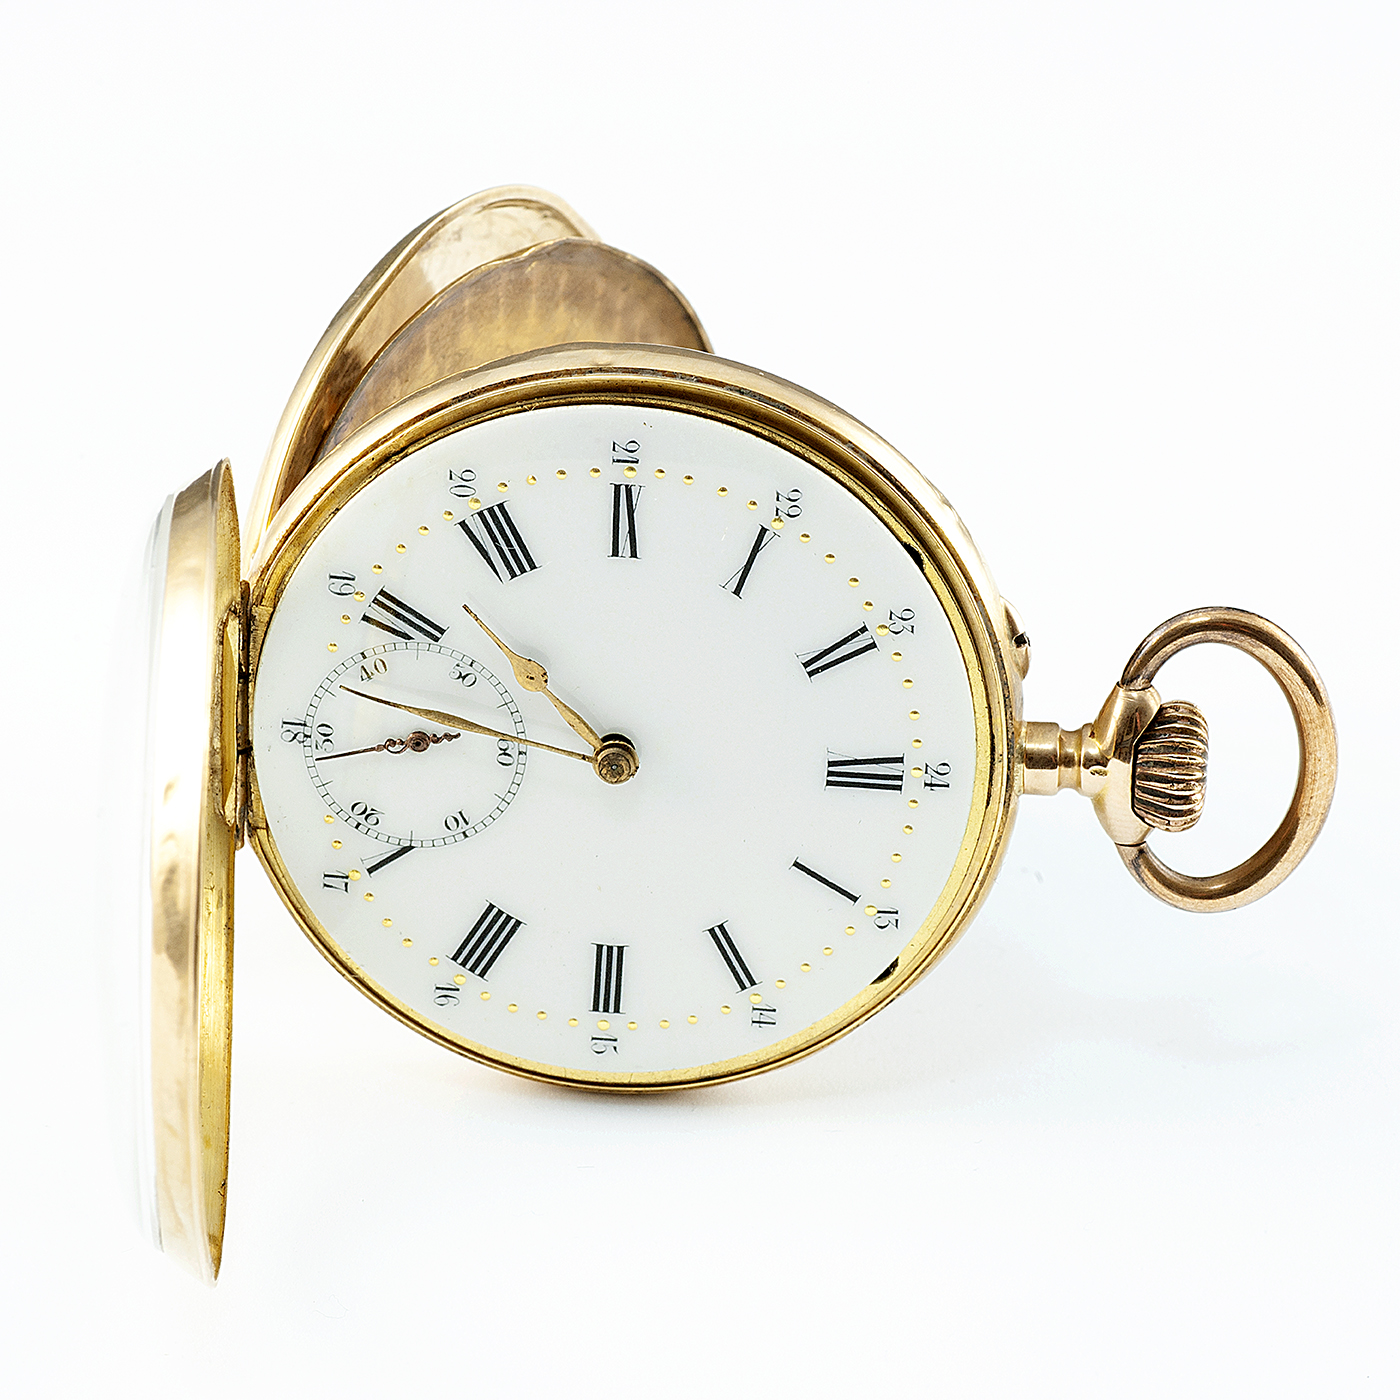 Reloj Suizo de Bolsillo, lepine y remontoir, Oro 18k. Ca. 1900